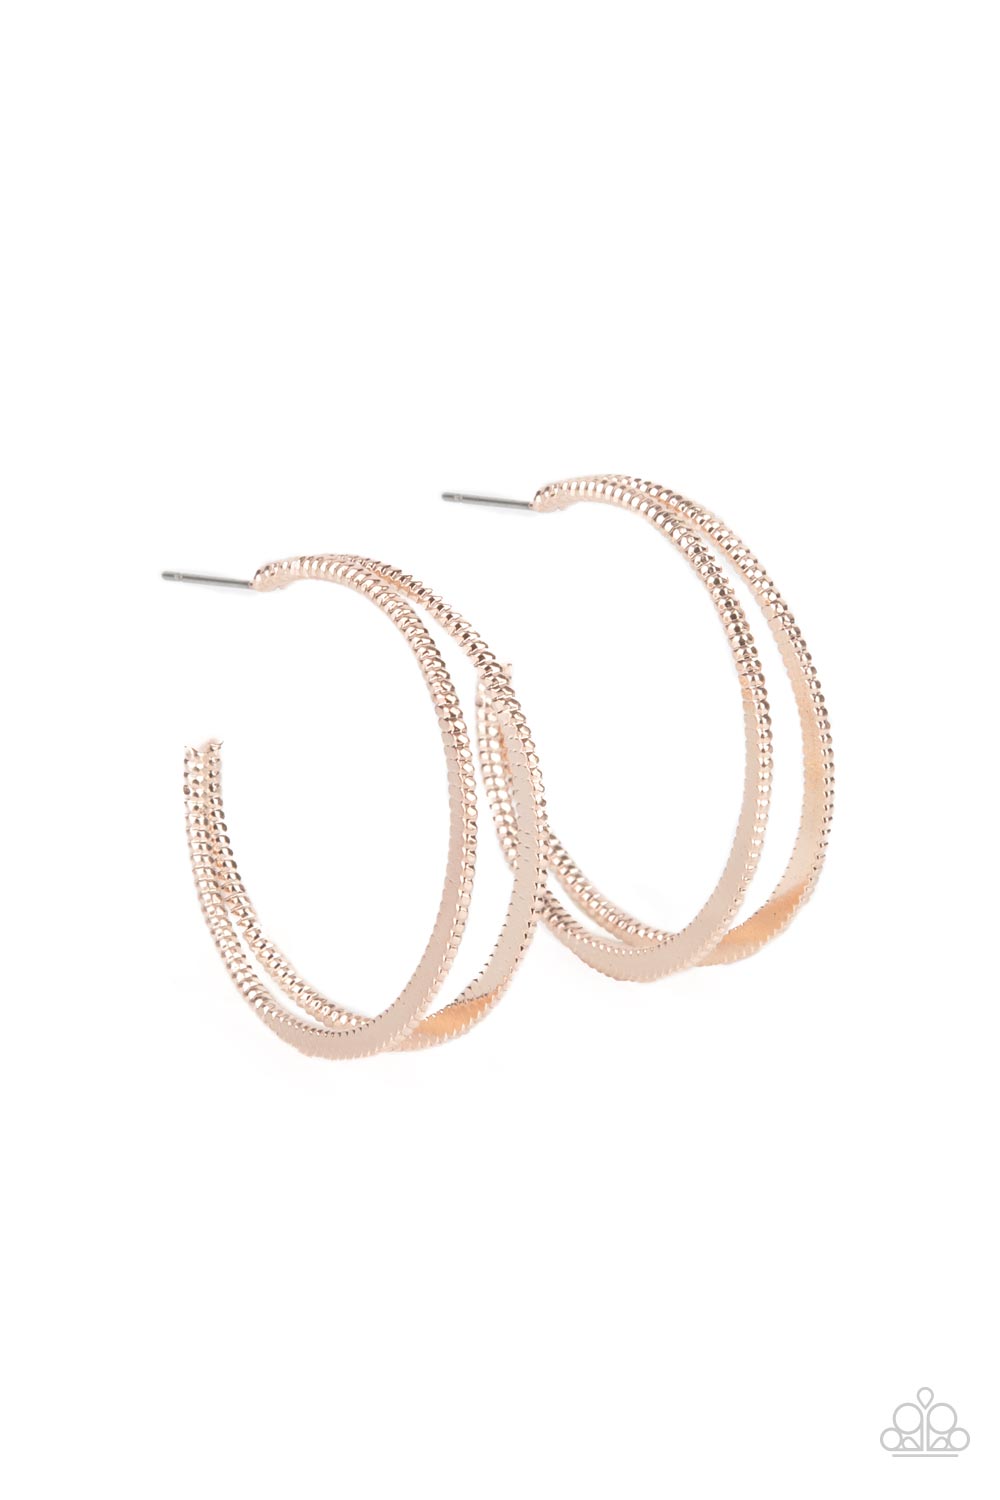 Rustic Curves - Rose Gold Hoop Earrings - Princess Glam Shop